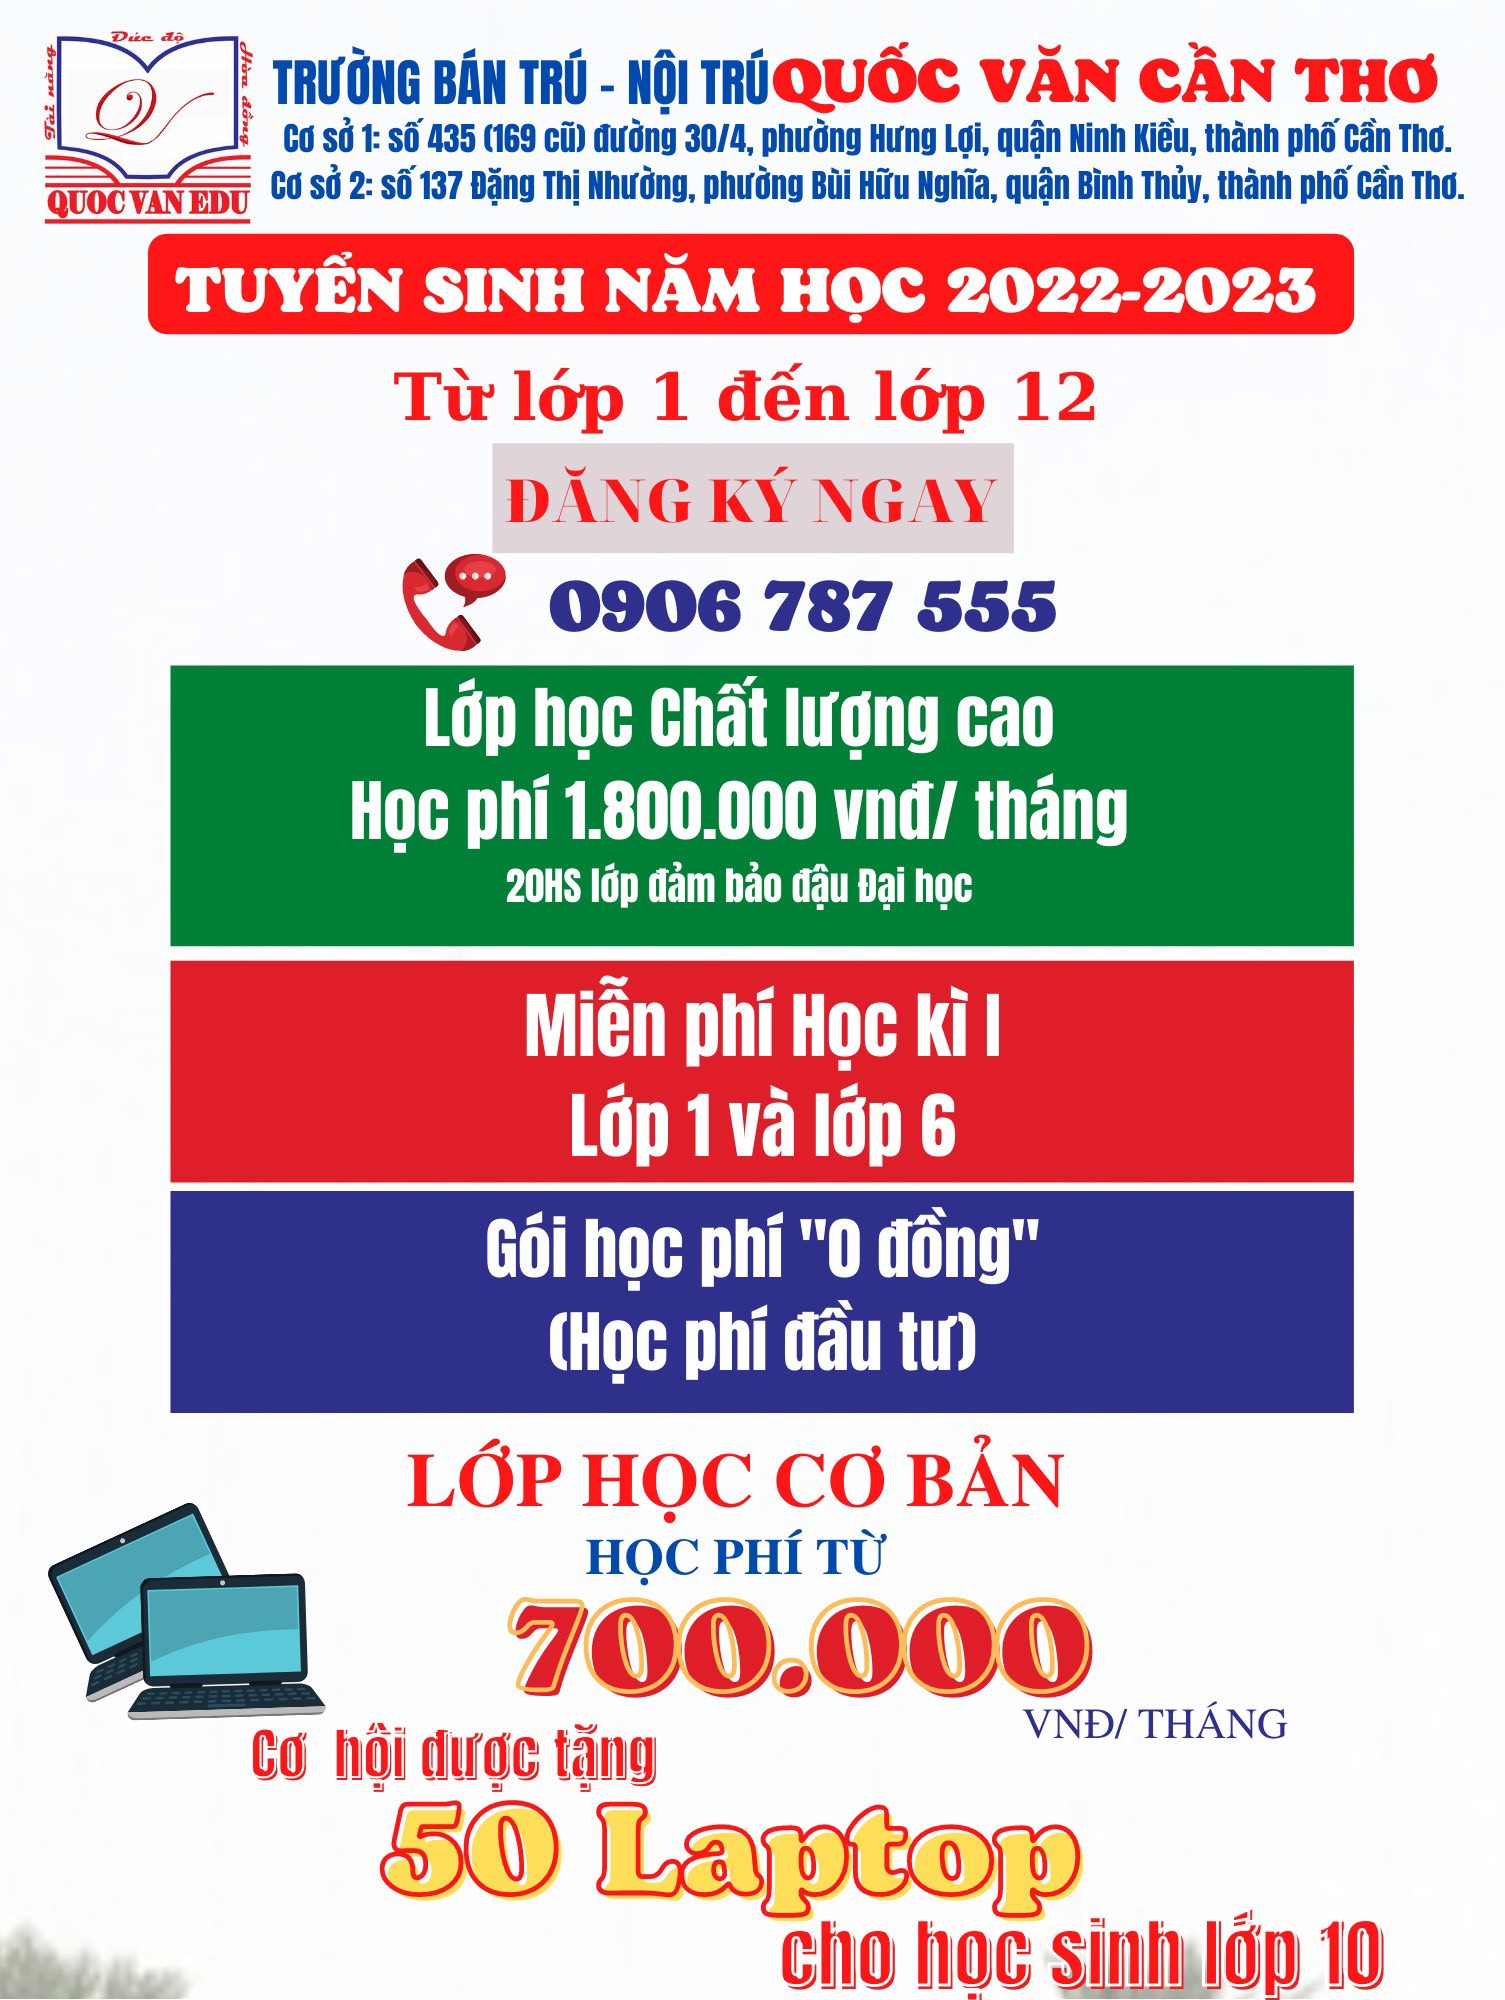 TUYỂN SINH NĂM HỌC 2022-2023 (2)